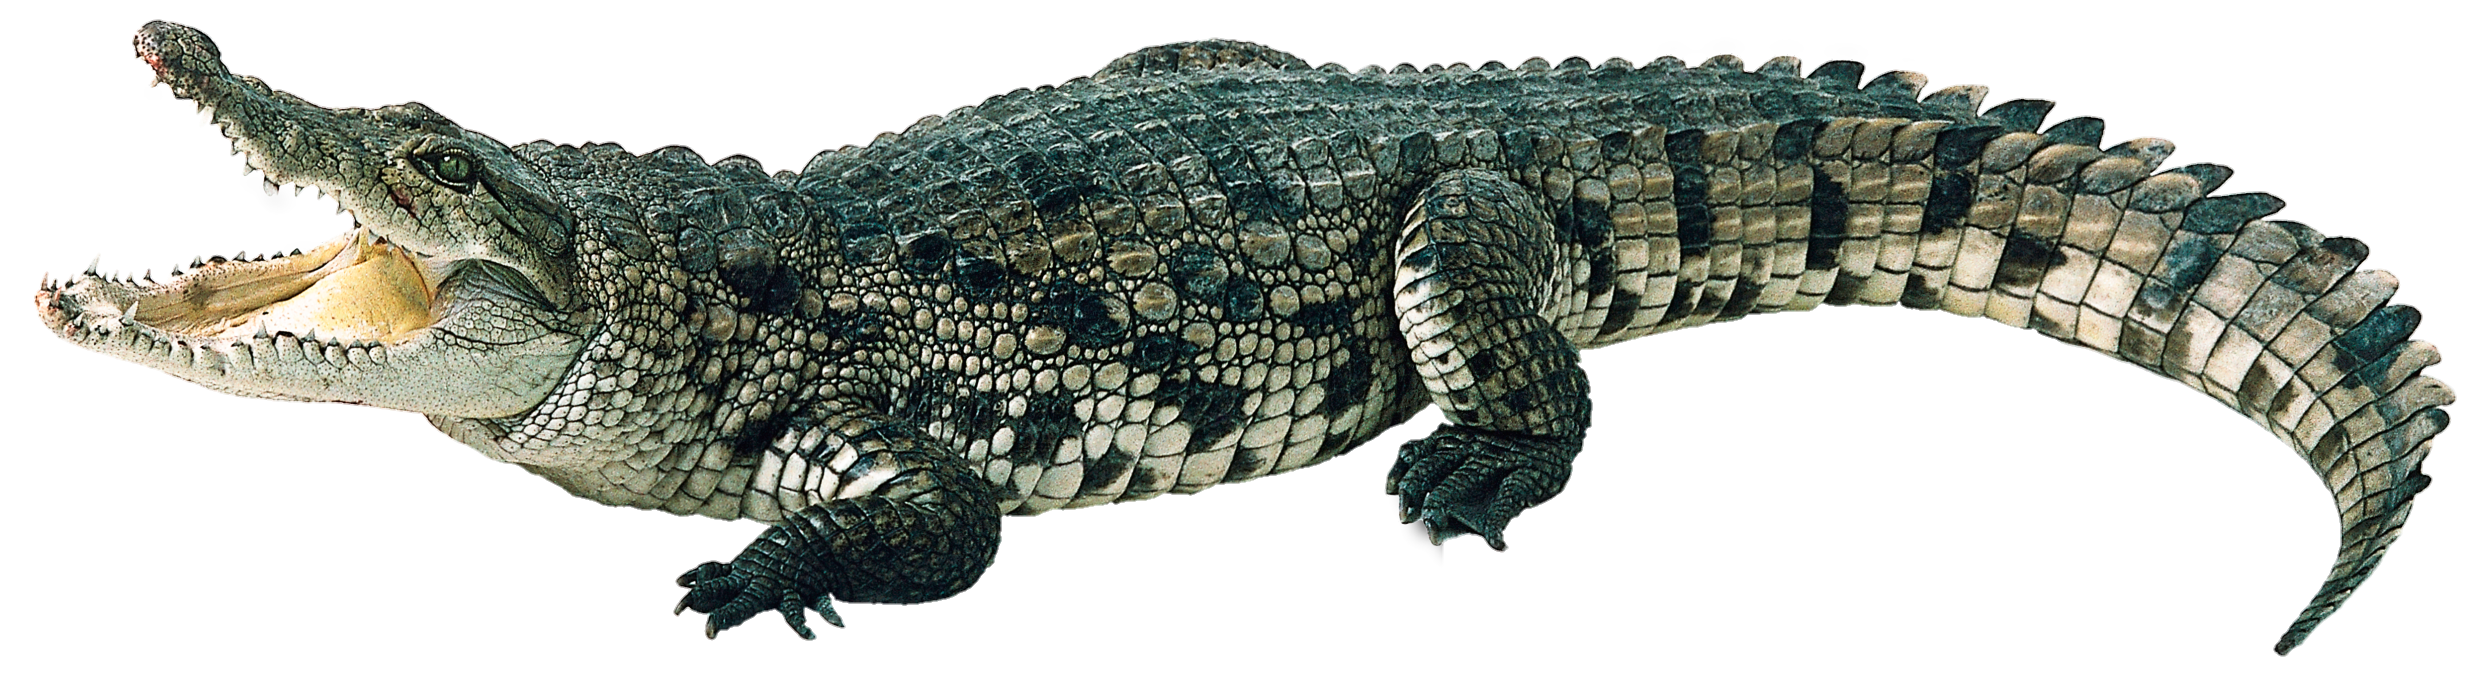 Crocodile-14